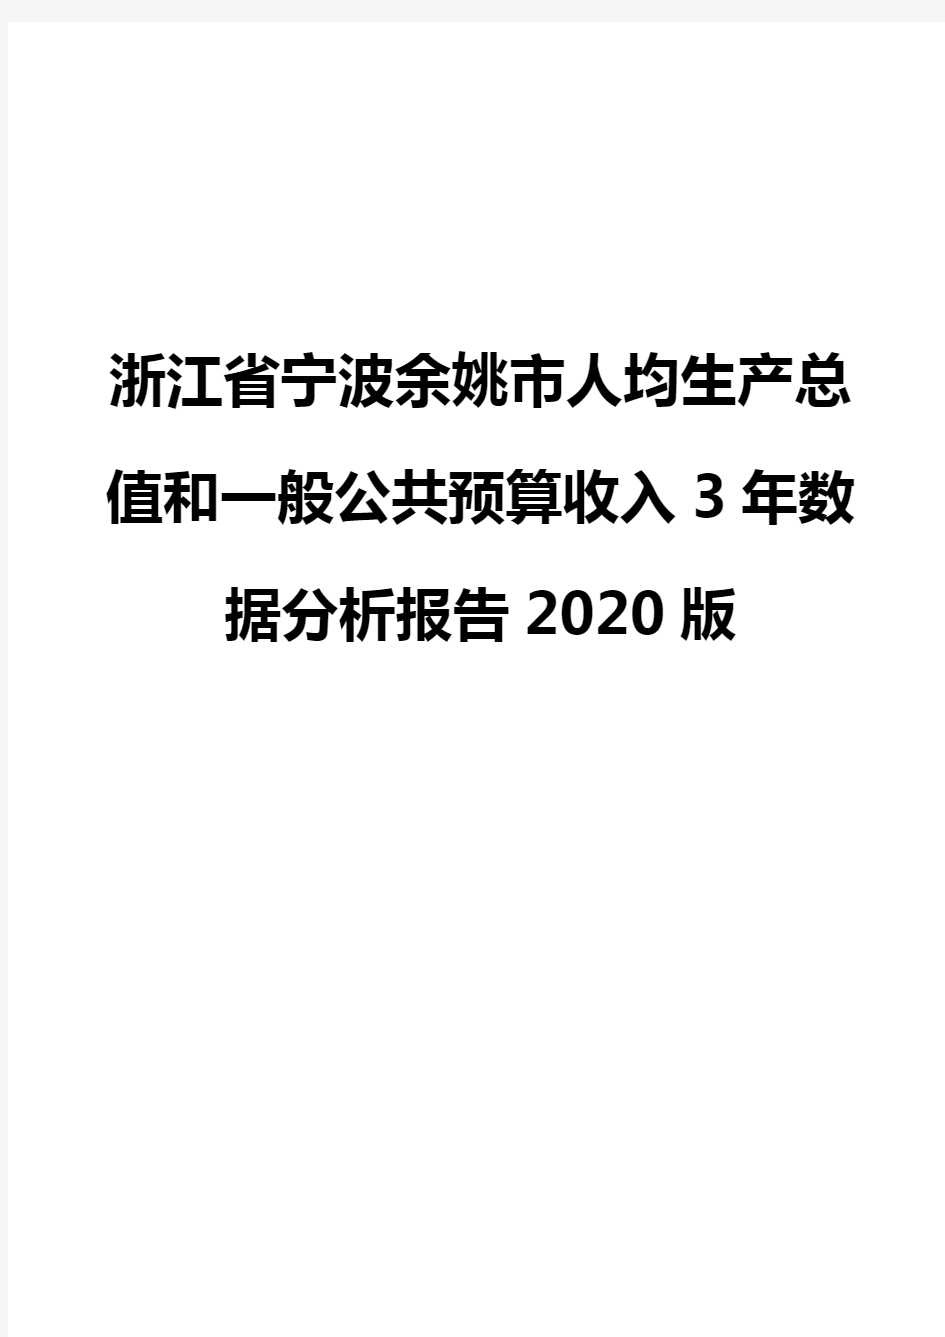 浙江省宁波余姚市人均生产总值和一般公共预算收入3年数据分析报告2020版